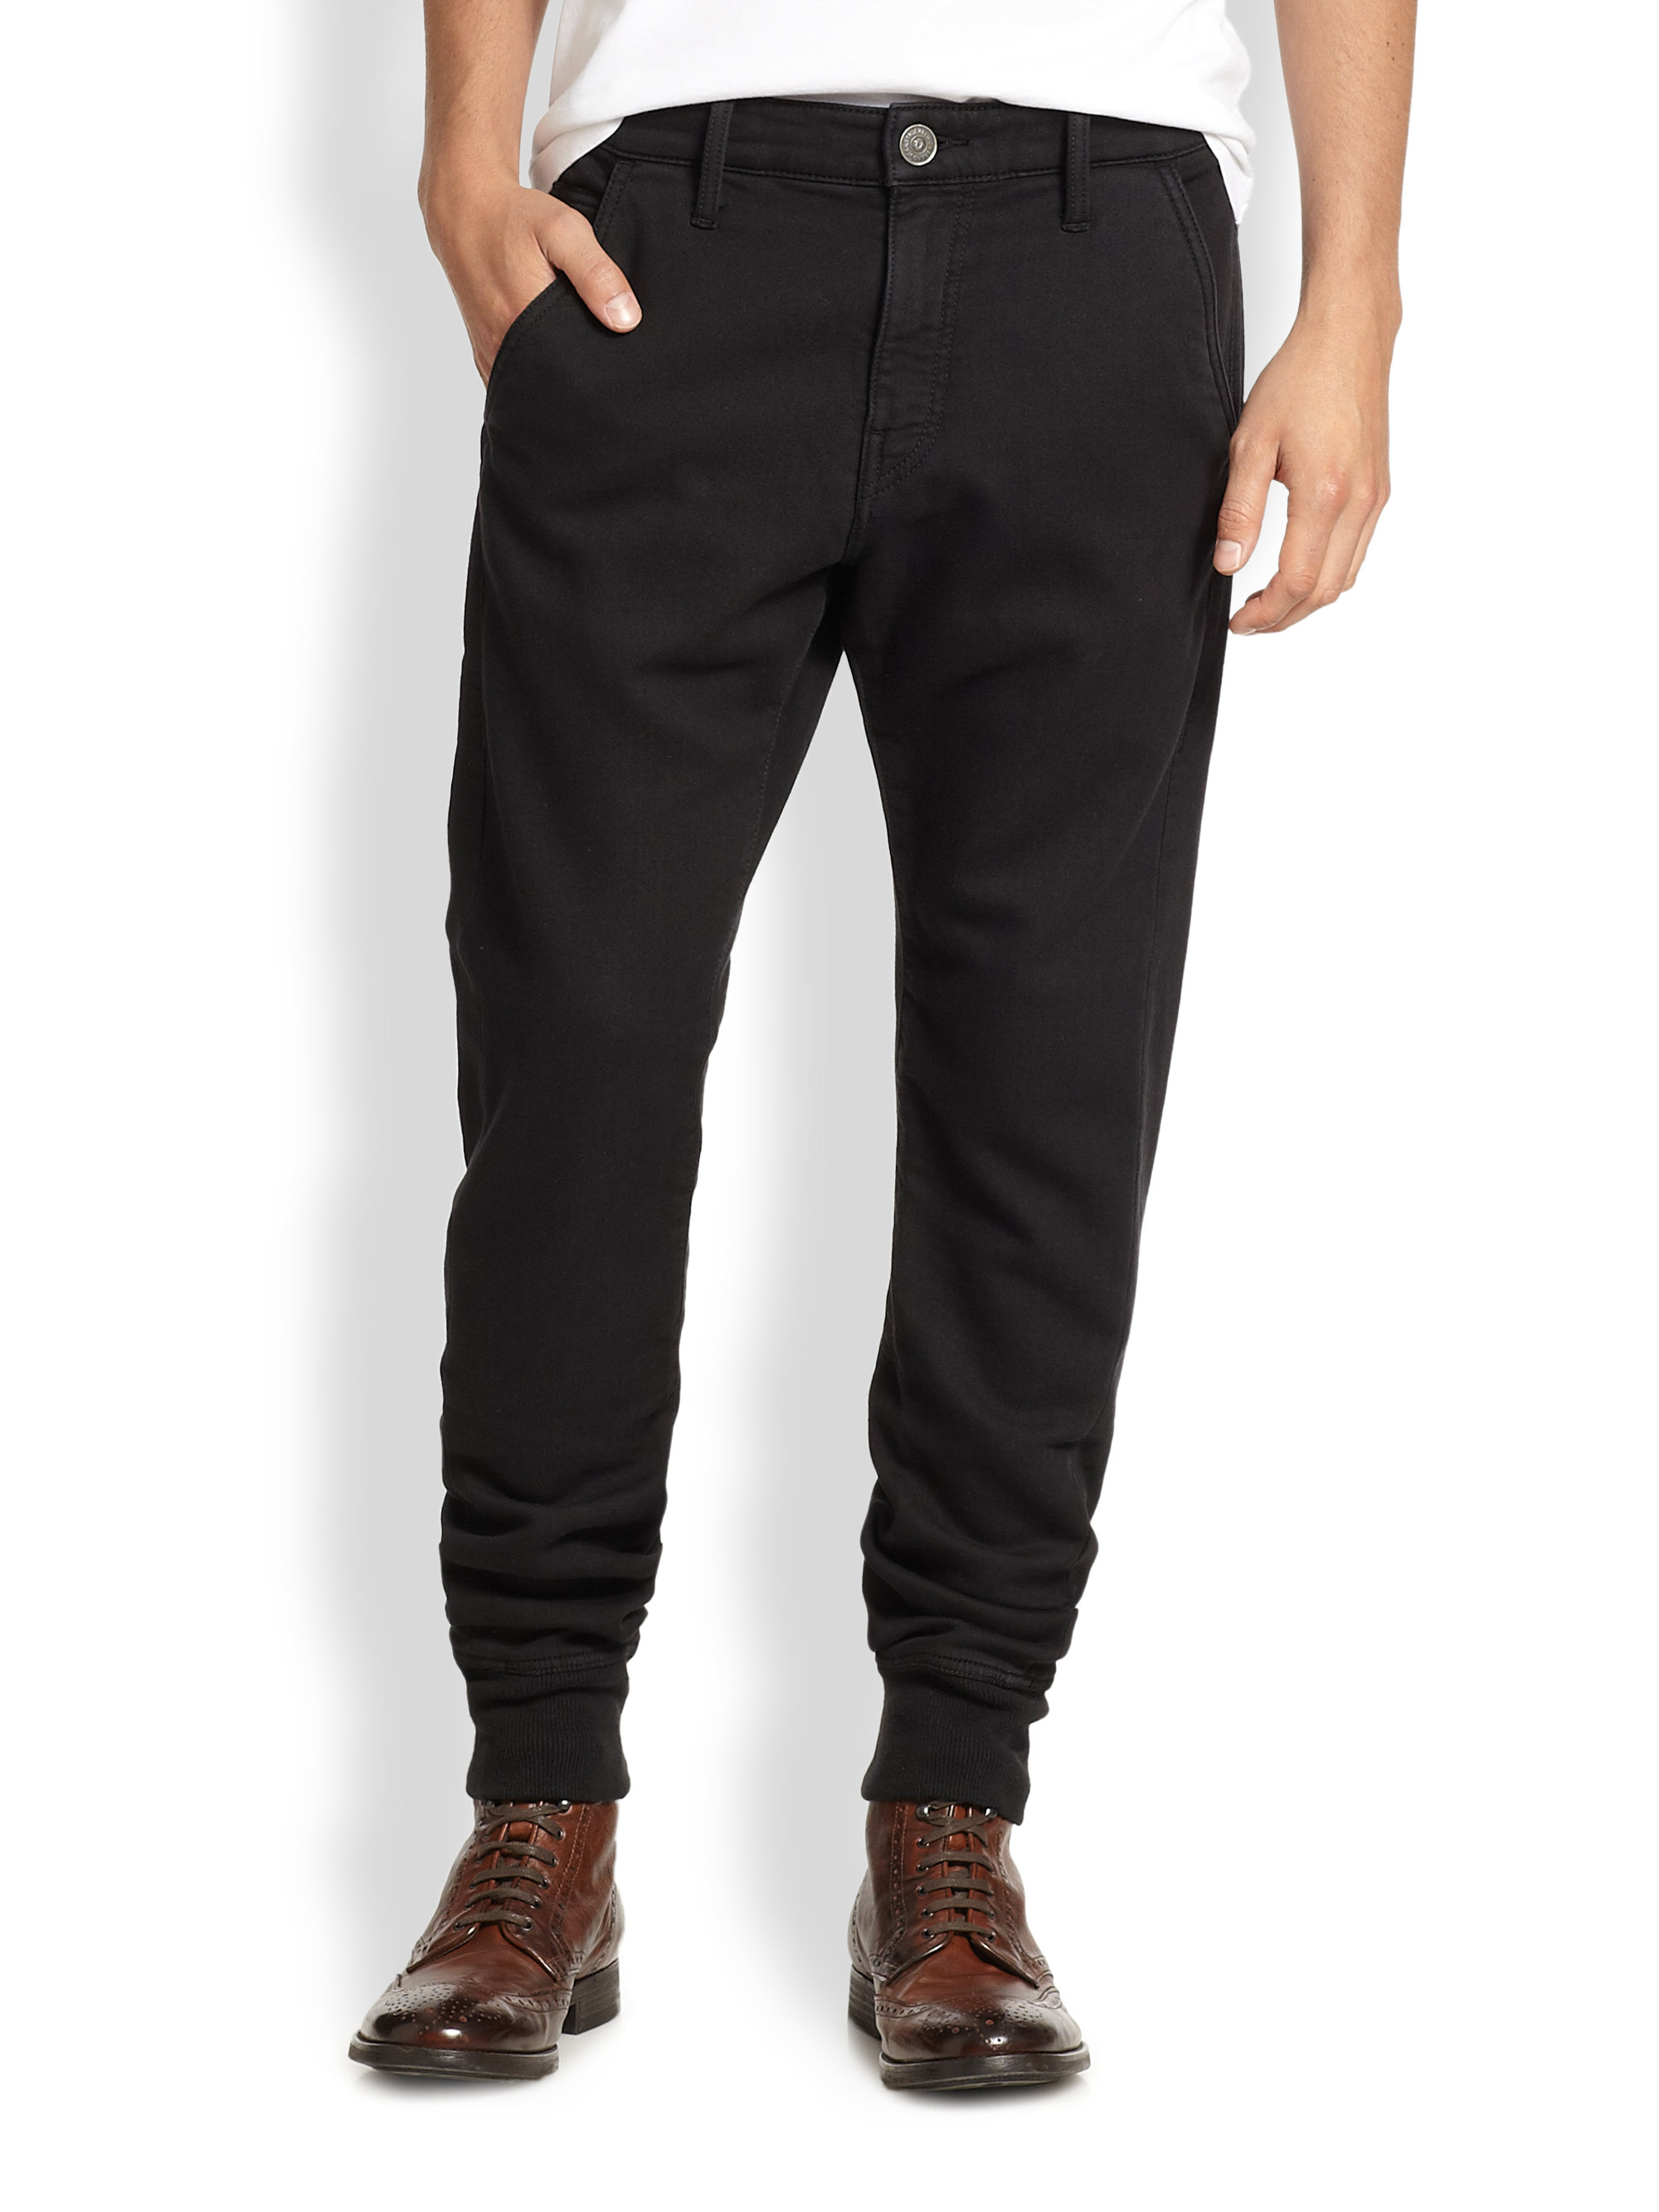 Lyst - True Religion Runner Relaxed Overdyed Pants in Black for Men